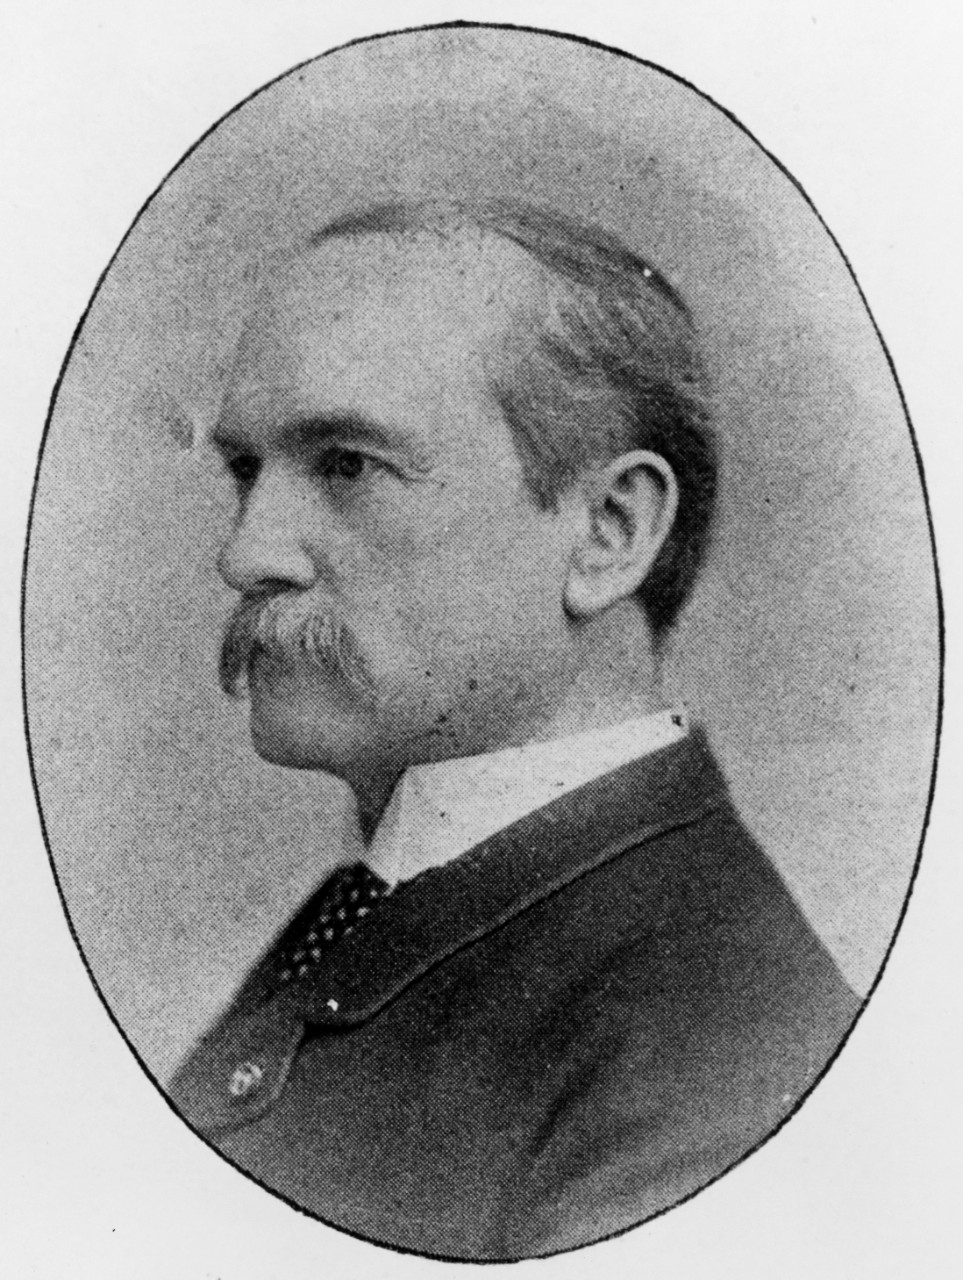 John H. Stevenson